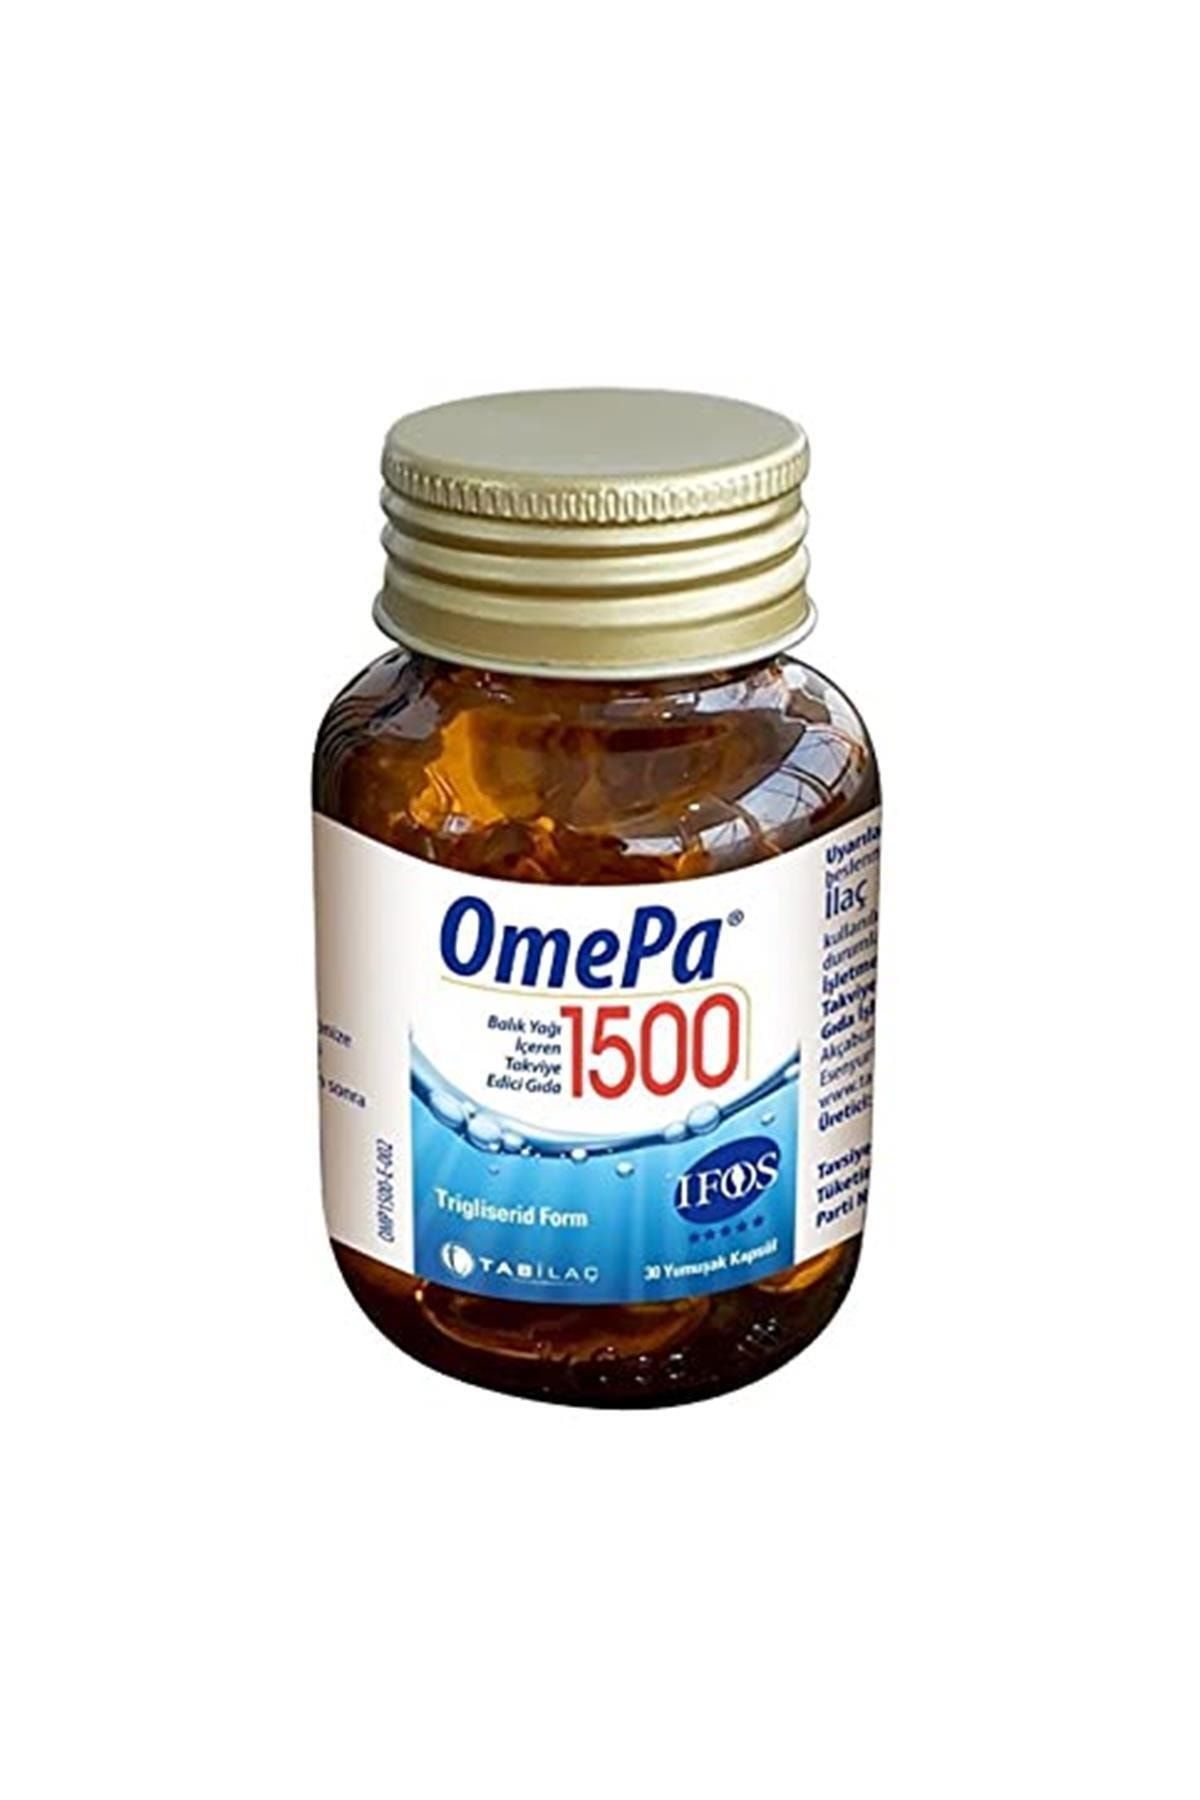 Omepa Omepa 1500 30 Yumusak Kapsül ( Balık Yağı Içeren Takviye Edici Gıda )